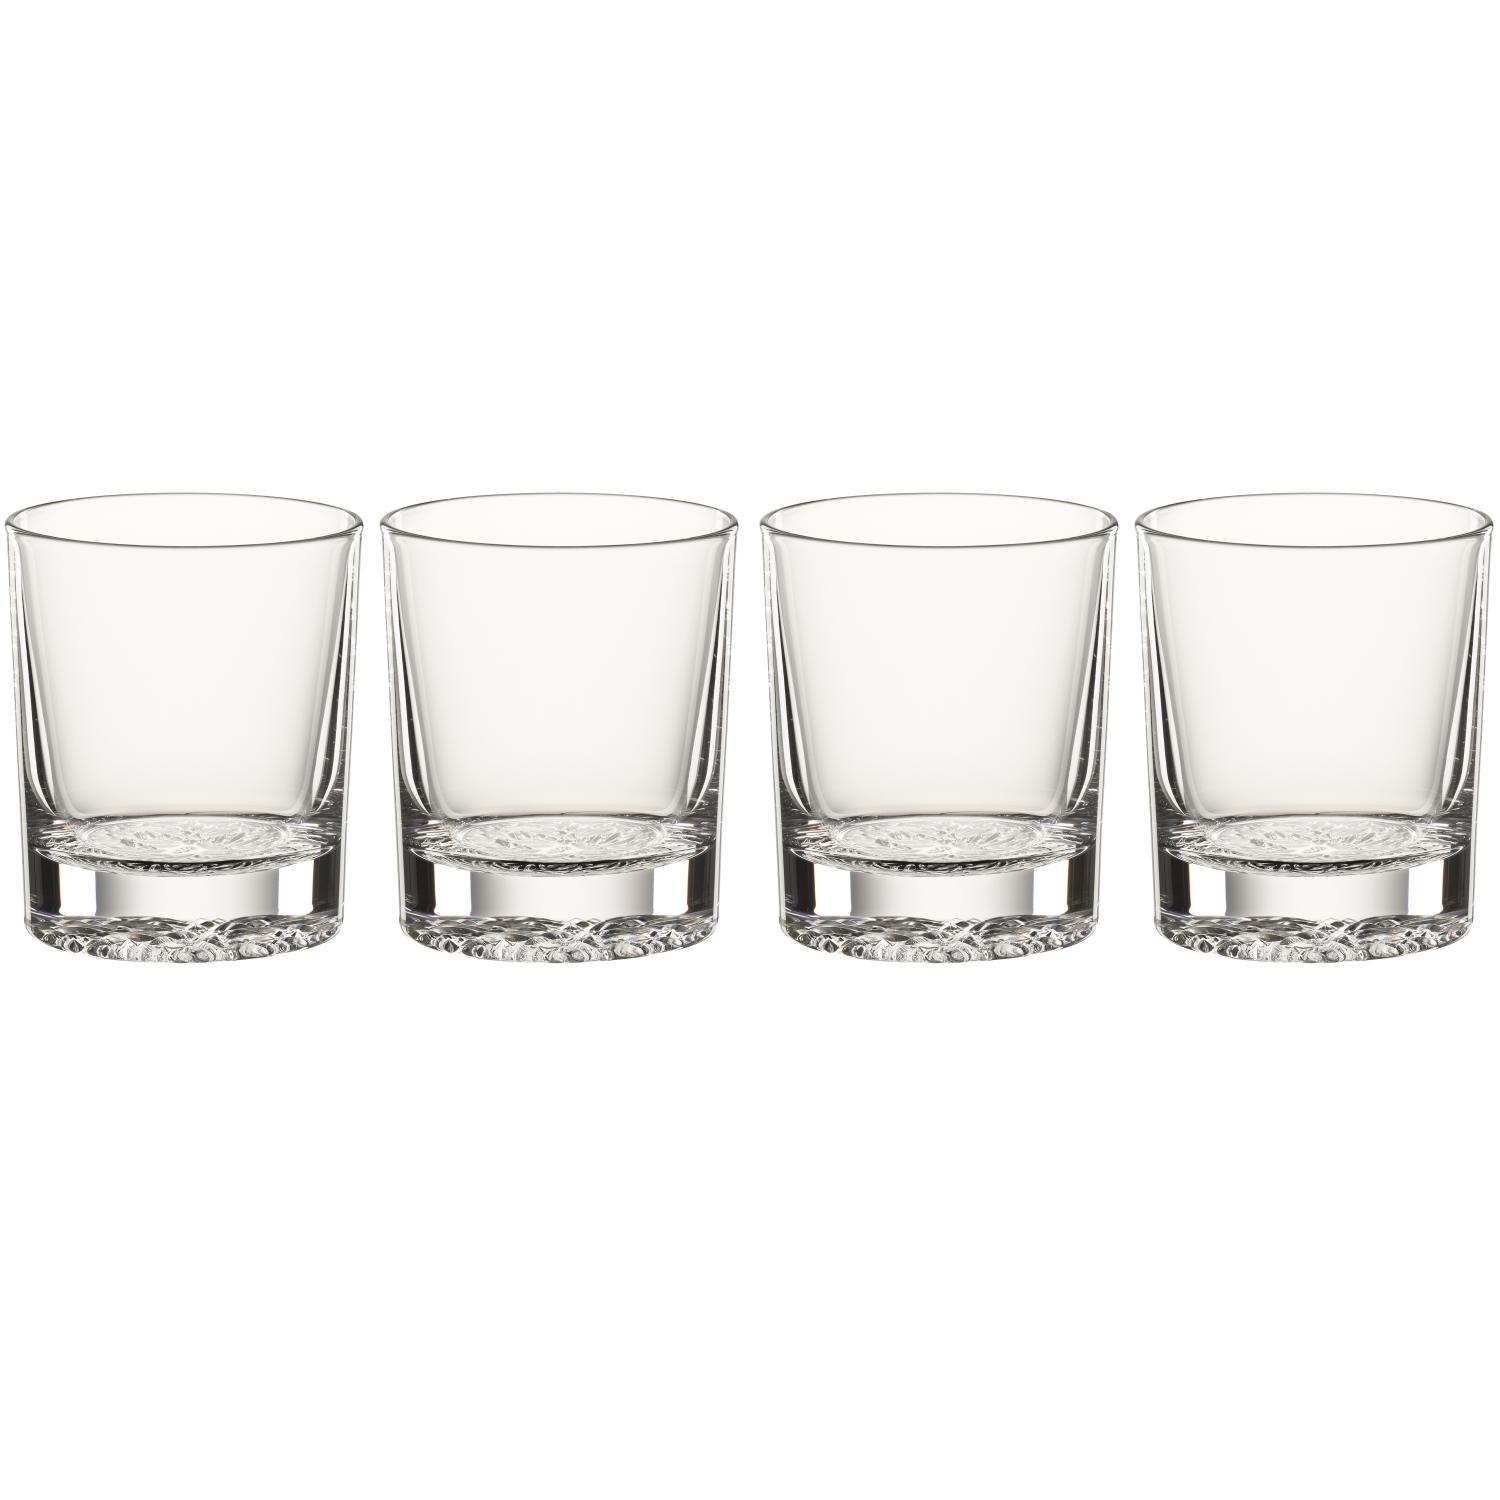 4 стакана для виски Spiegelau Lounge 2.0 Single Old Fashioned 238 мл (арт. 2710165)